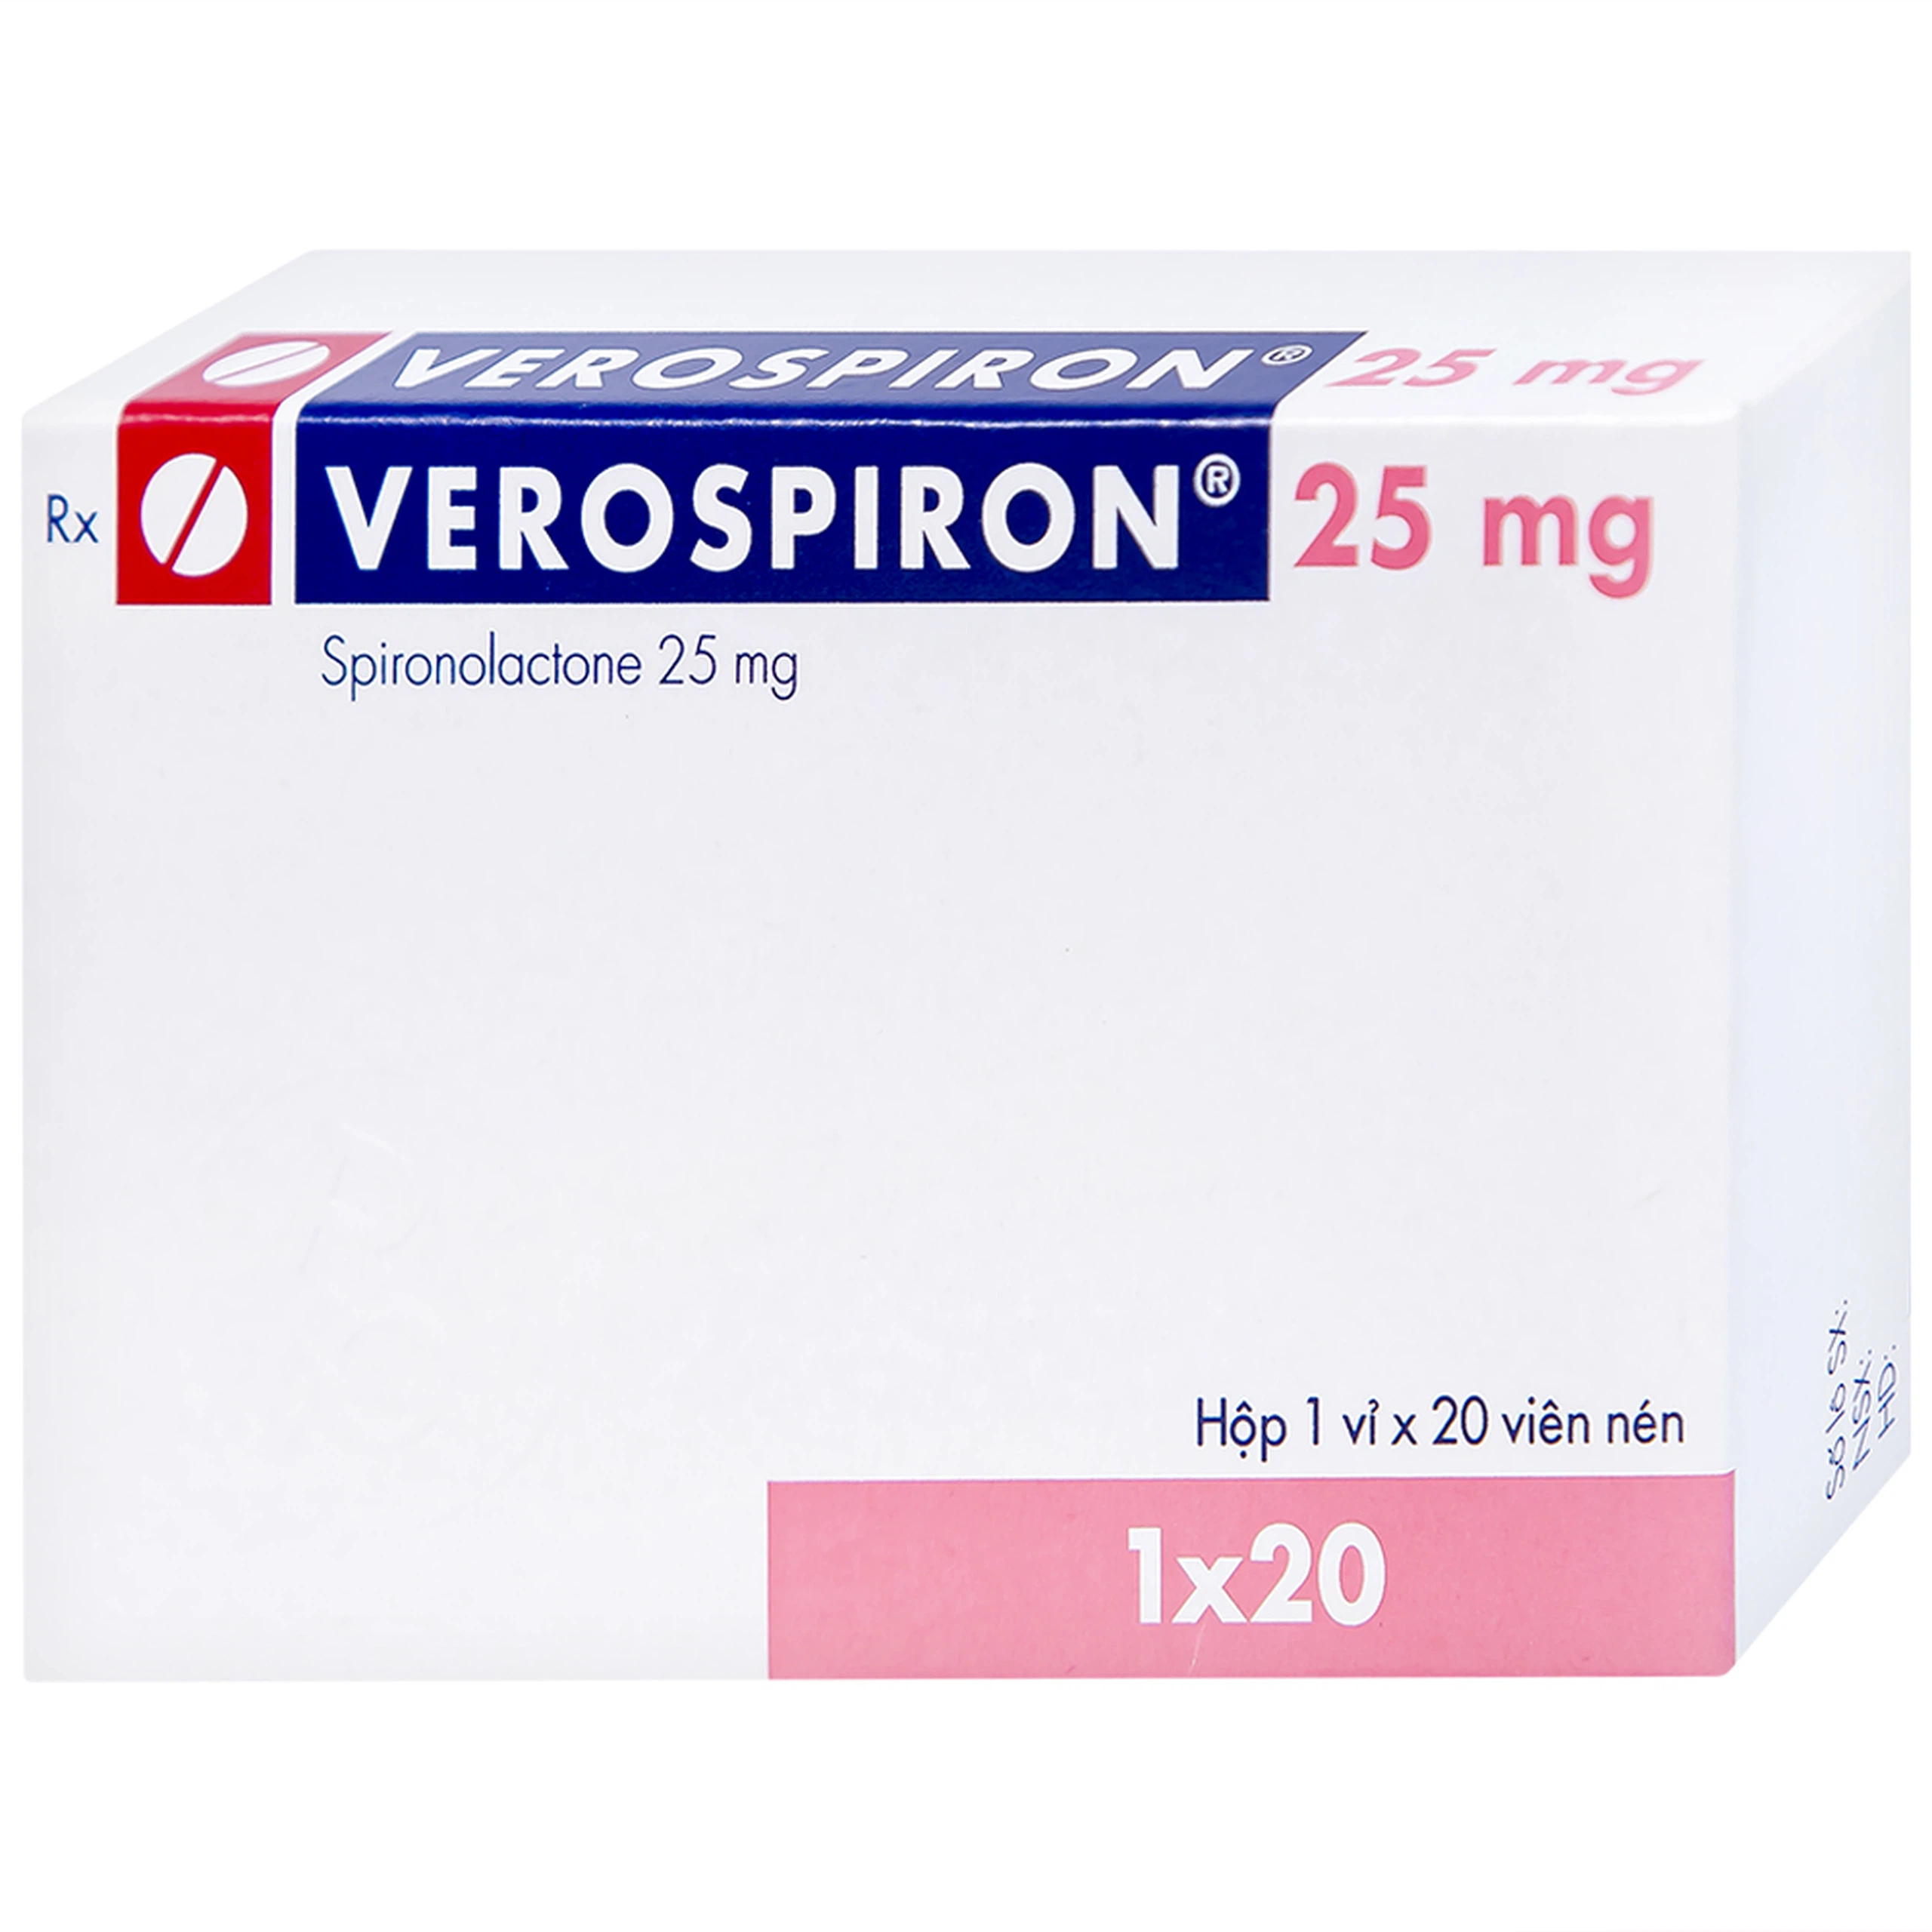 Thuốc Verospiron 25mg Gedeon điều trị ngắn hạn phẫu thuật (1 vỉ x 20 viên)